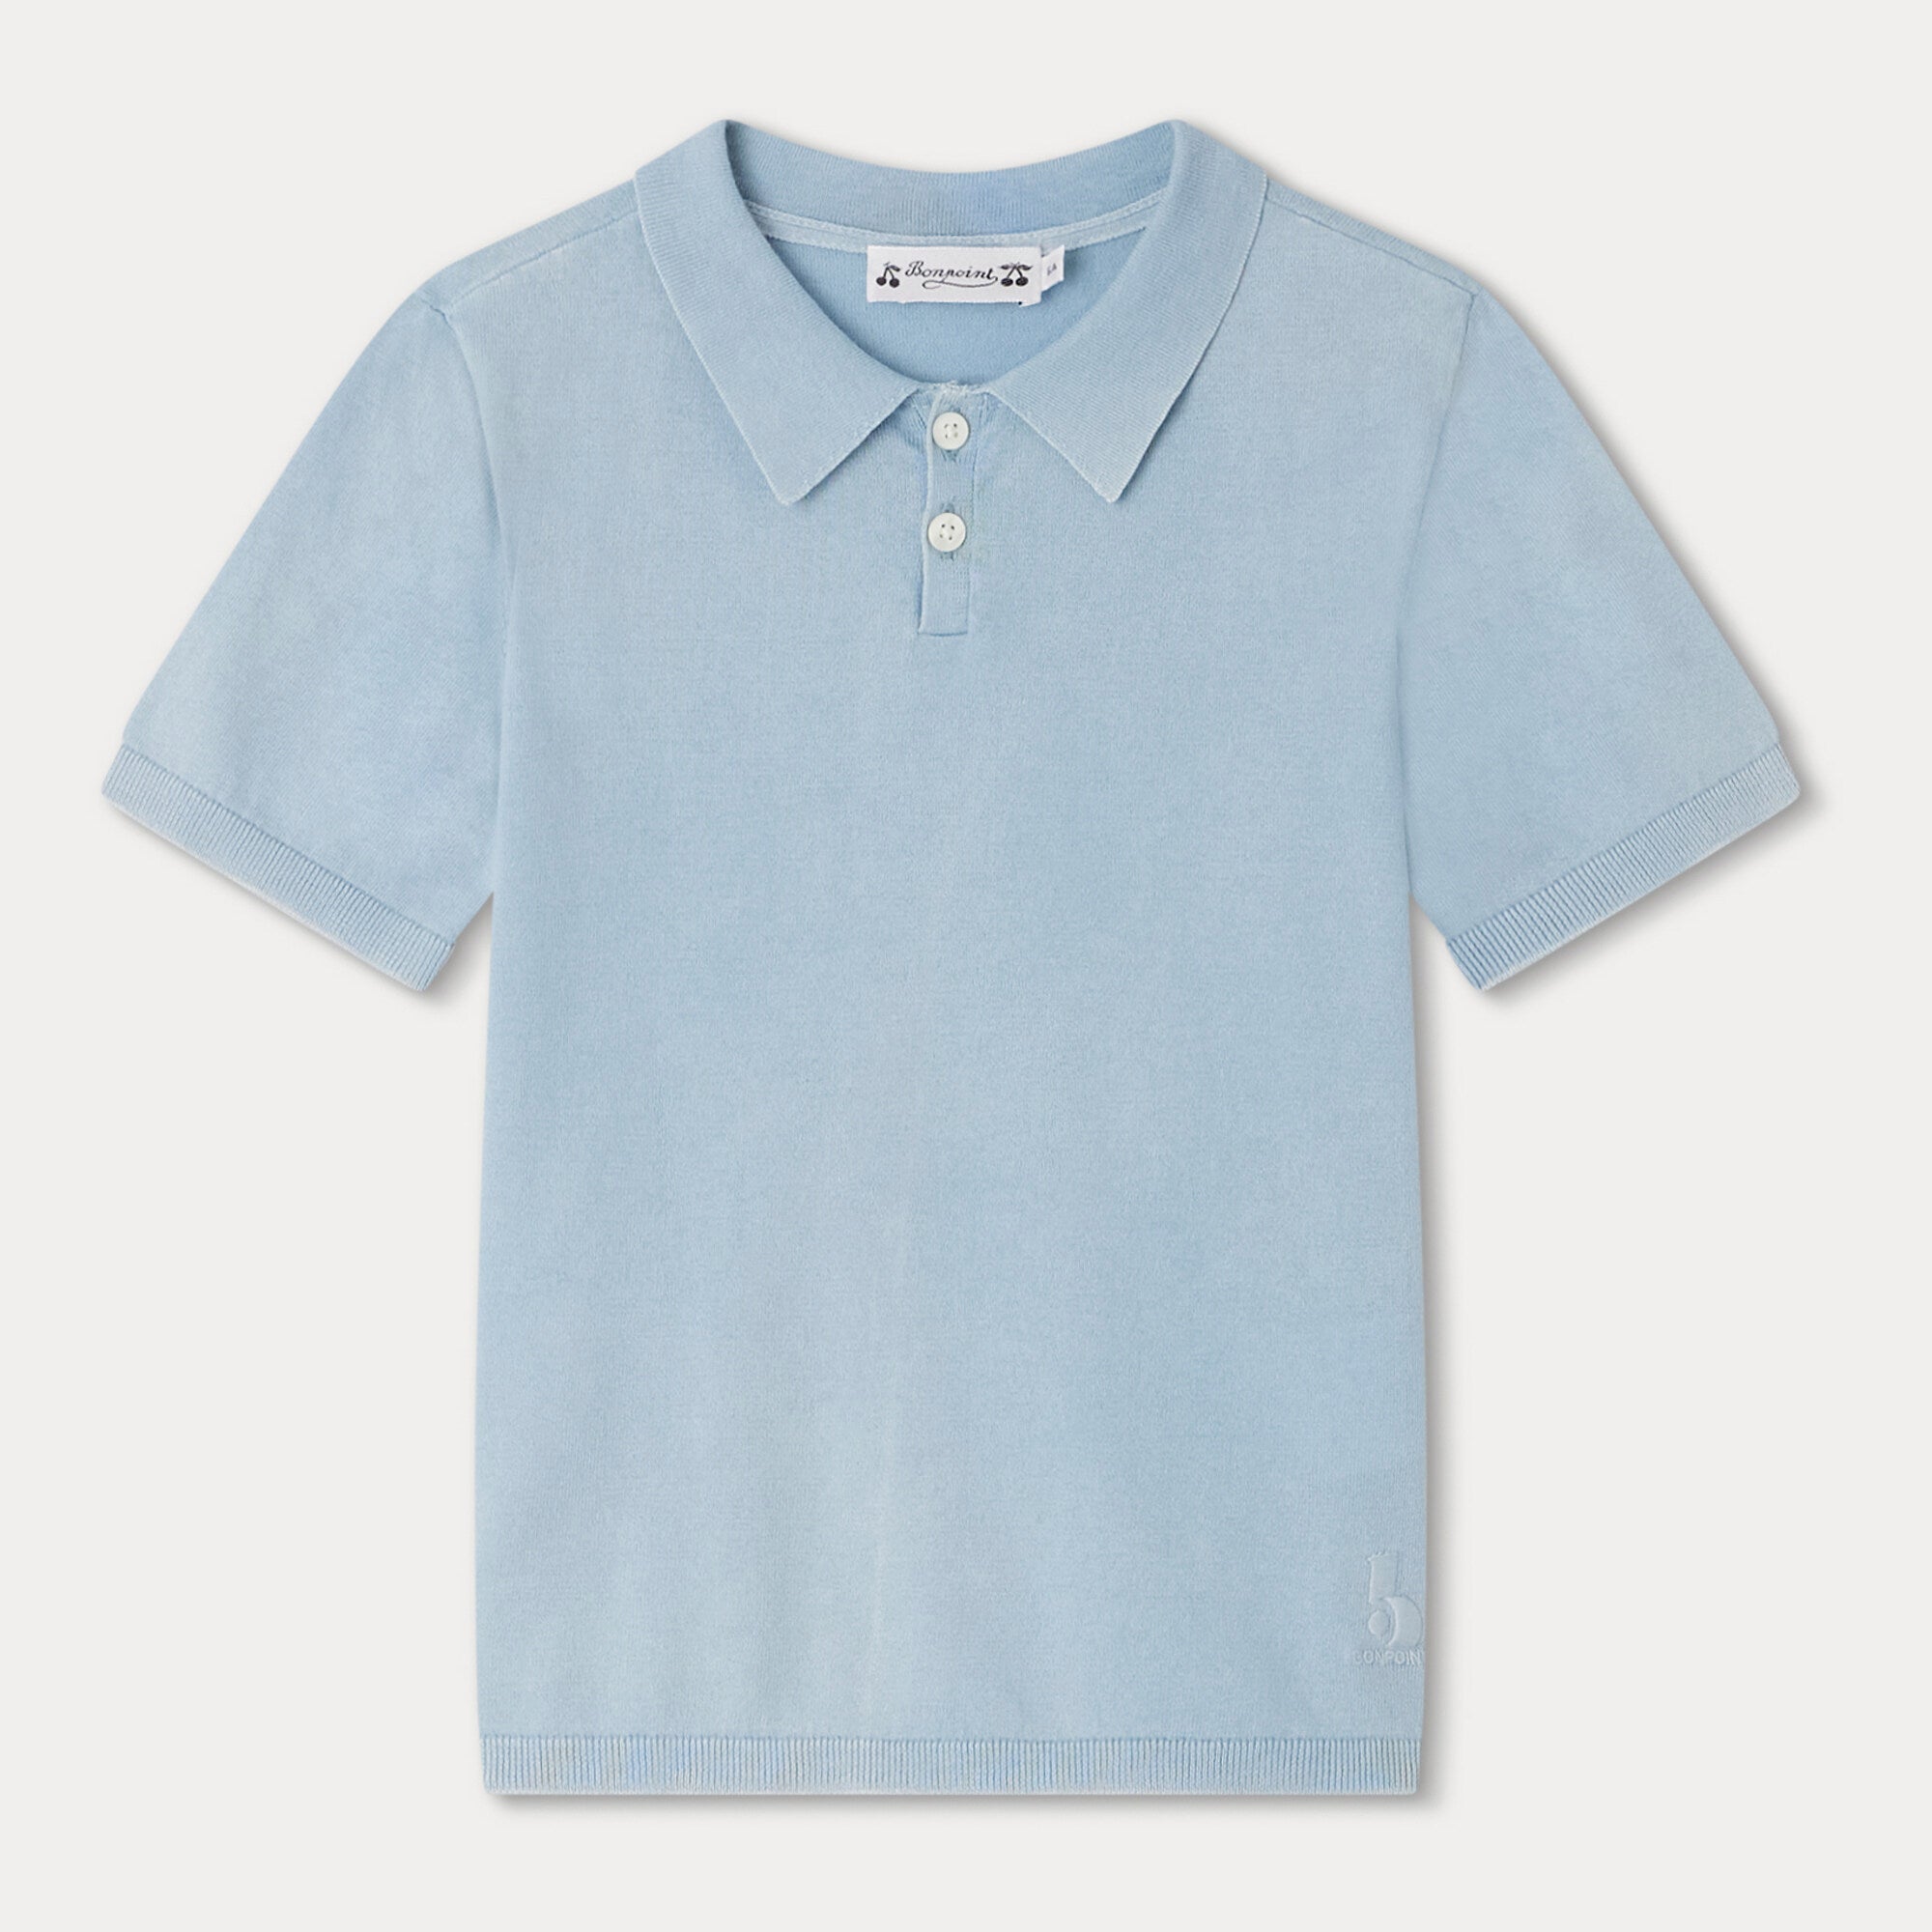 Boys Blue Cotton Polo Shirt